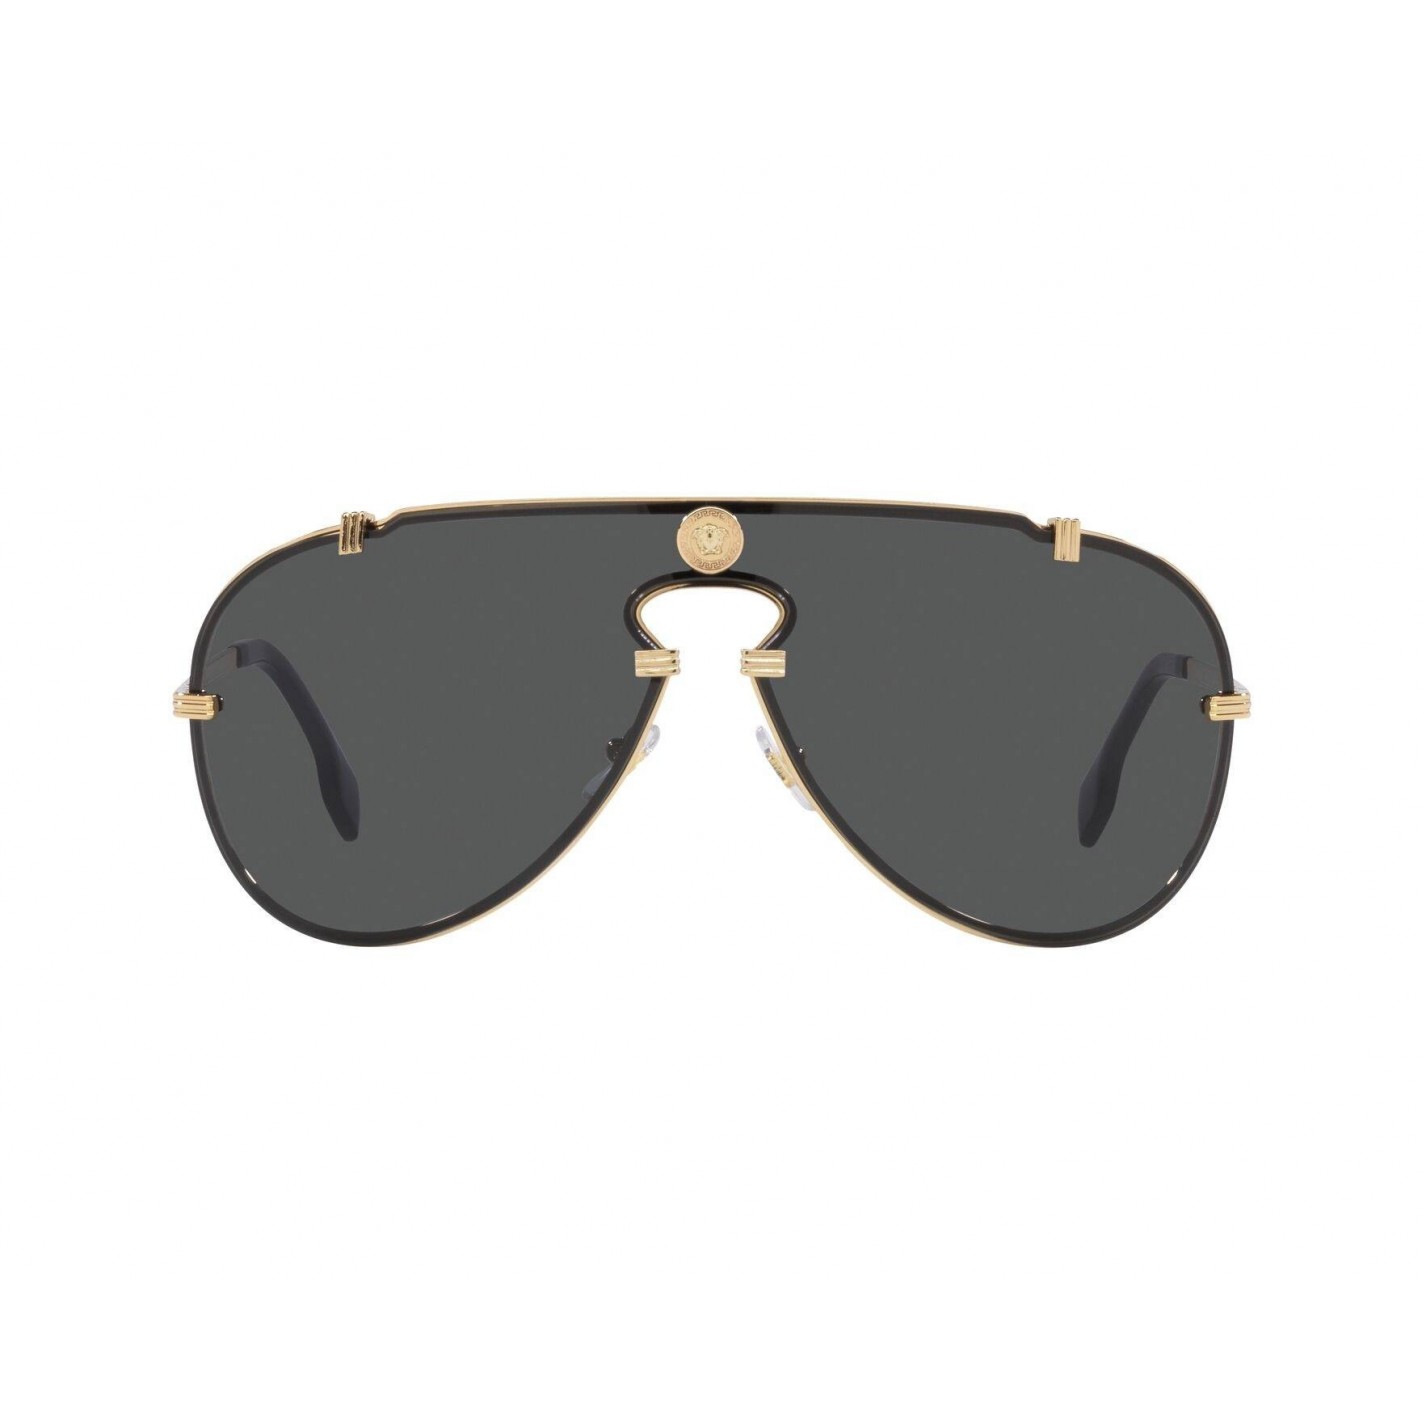 Gafas de Sol hombre Versace VE2243 100287 forma envolvente metal estilo luxury